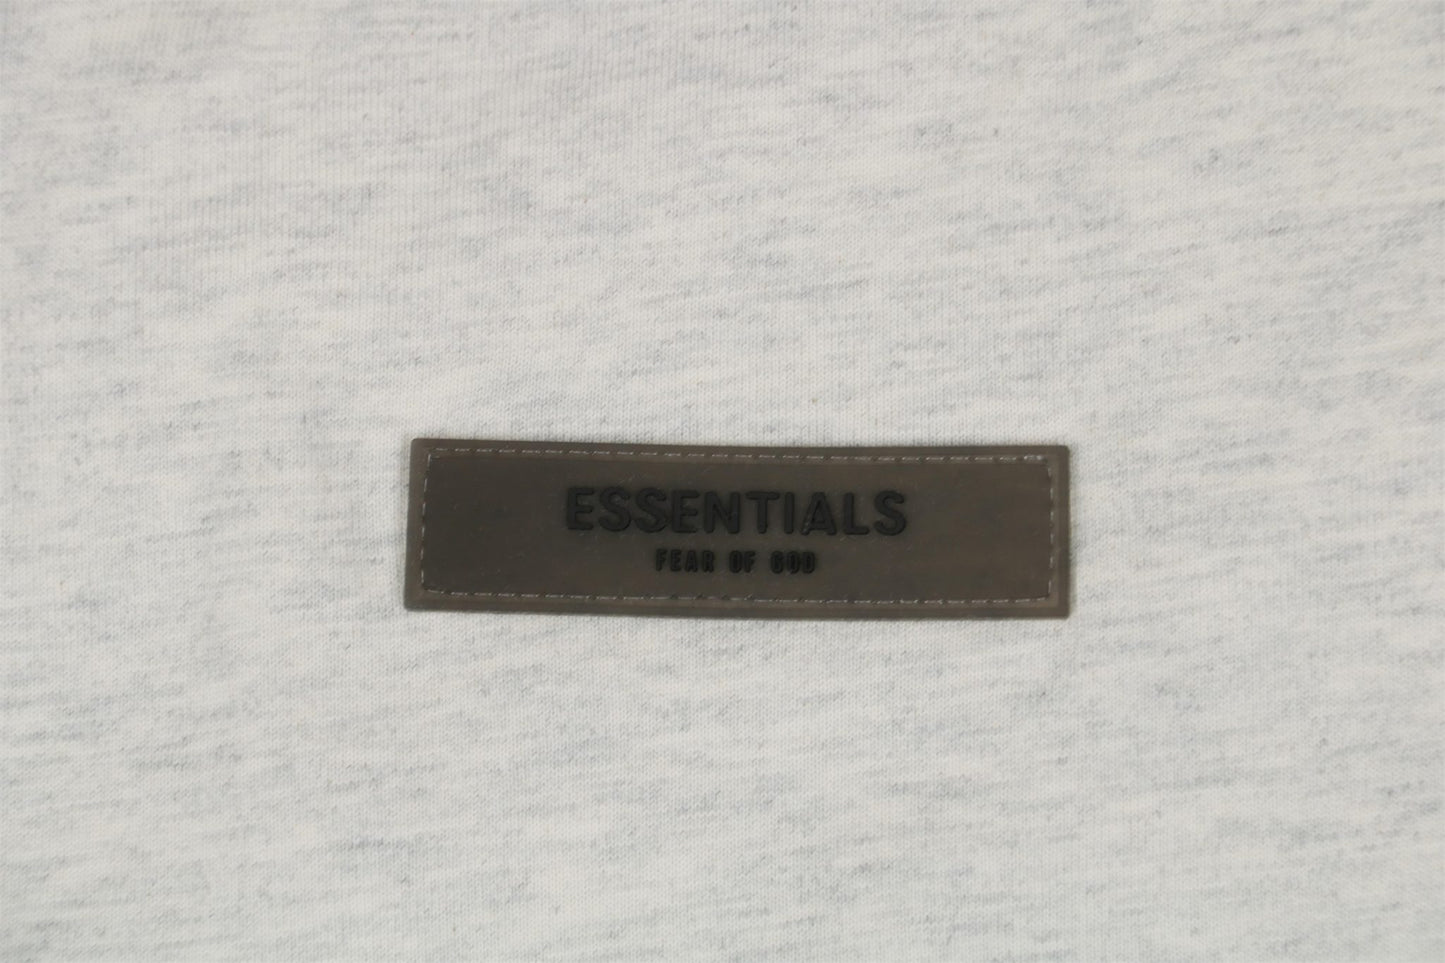 FOG Light Grey 1977 E55ential5 T-Shirt